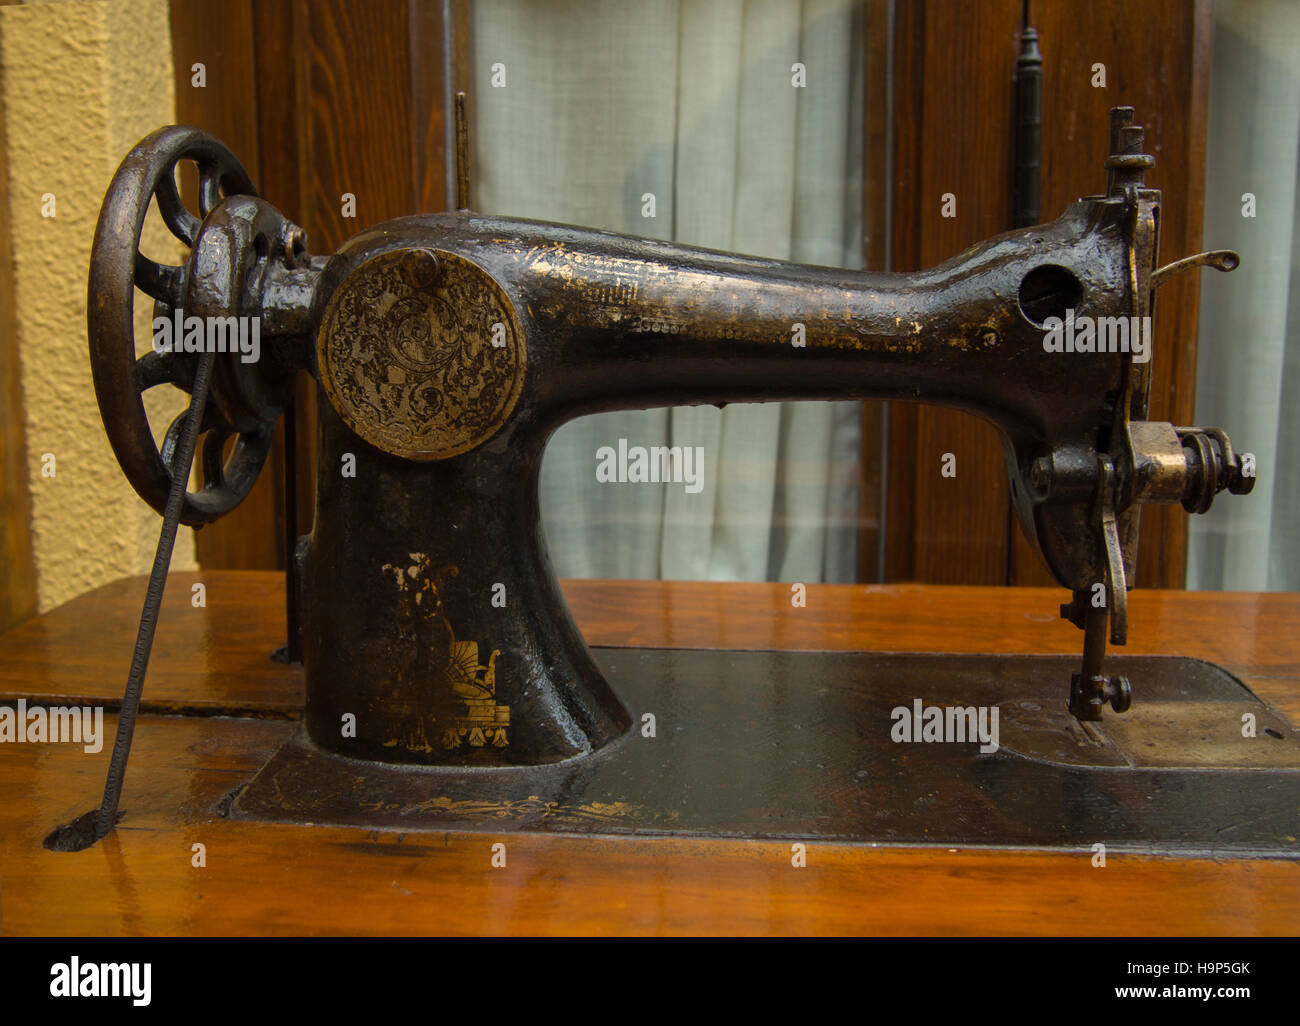 Alte Nähmaschine Tisch auf braun Stockfotografie - Alamy